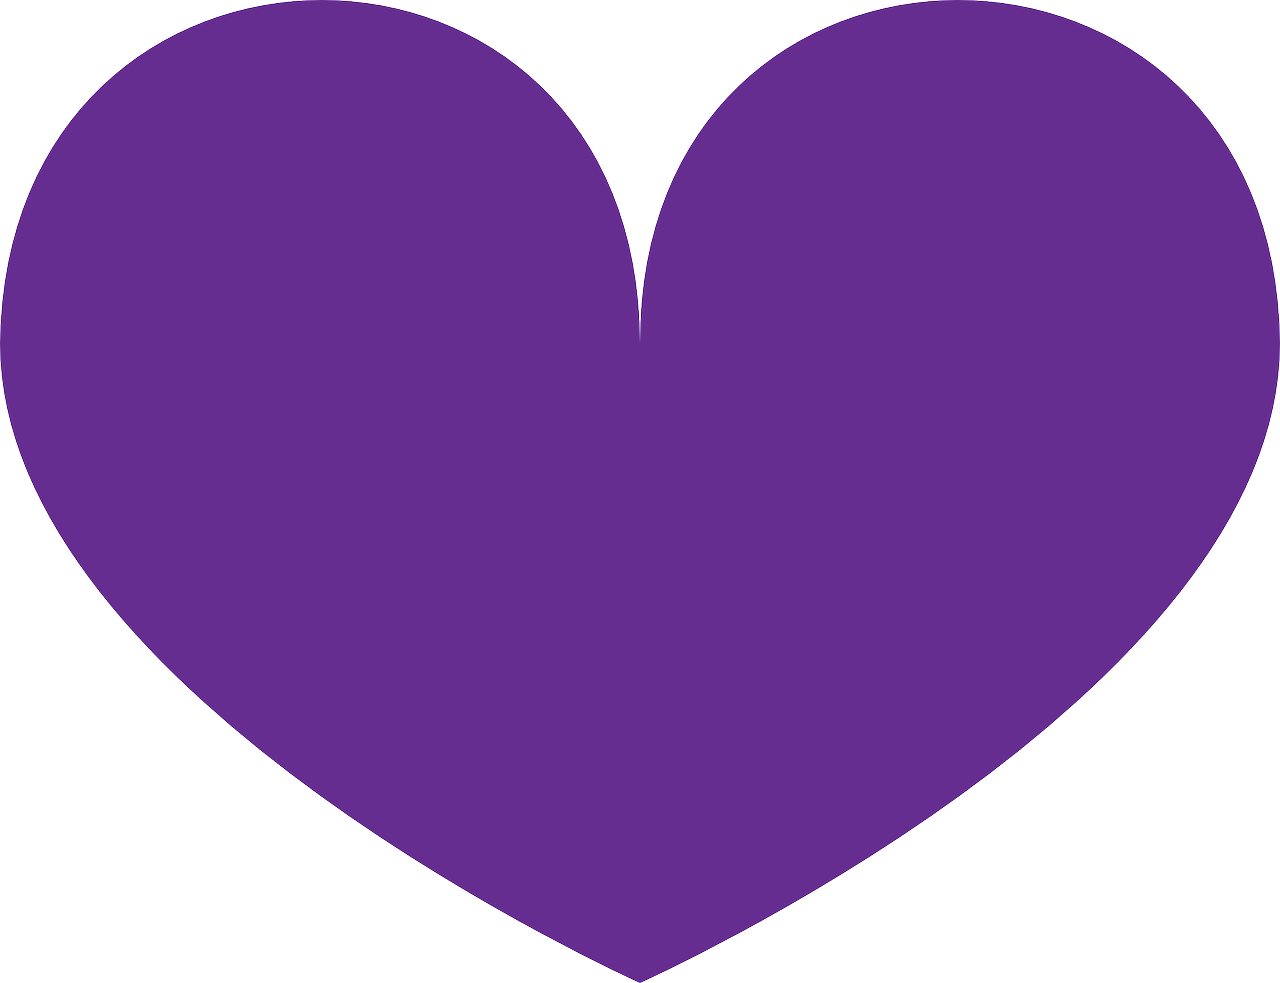 Hãy khám phá hình trái tim PNG với nền tím (purple) tráng (transparent) đầy quyến rũ và ngọt ngào. Bức ảnh này sẽ chắc chắn làm cho trái tim bạn tan chảy.